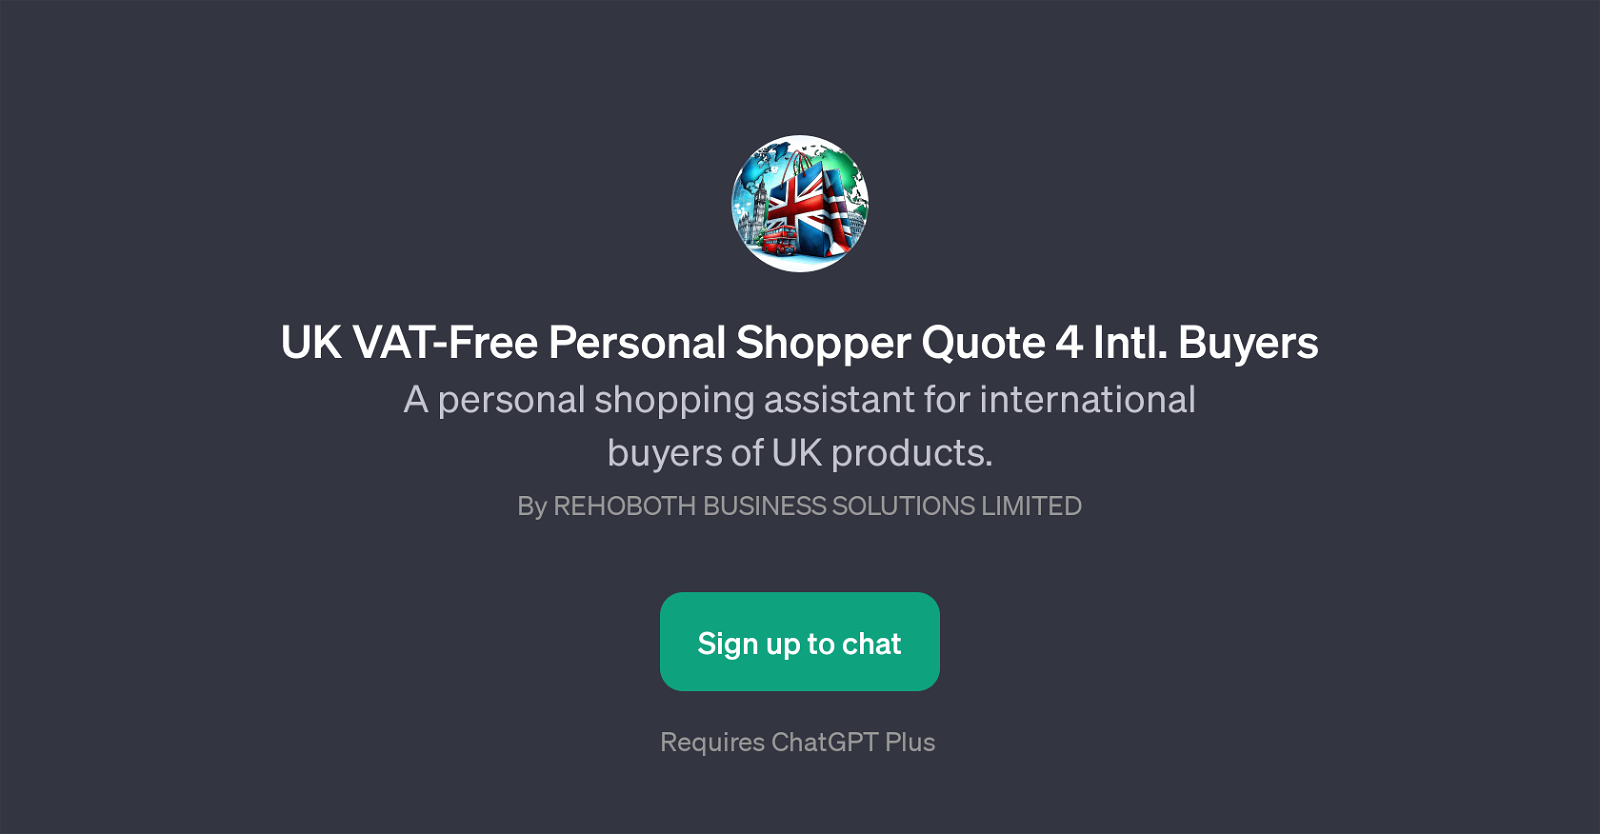 UK VAT-Free Personal Shopper Quote 4 Intl. Buyers website